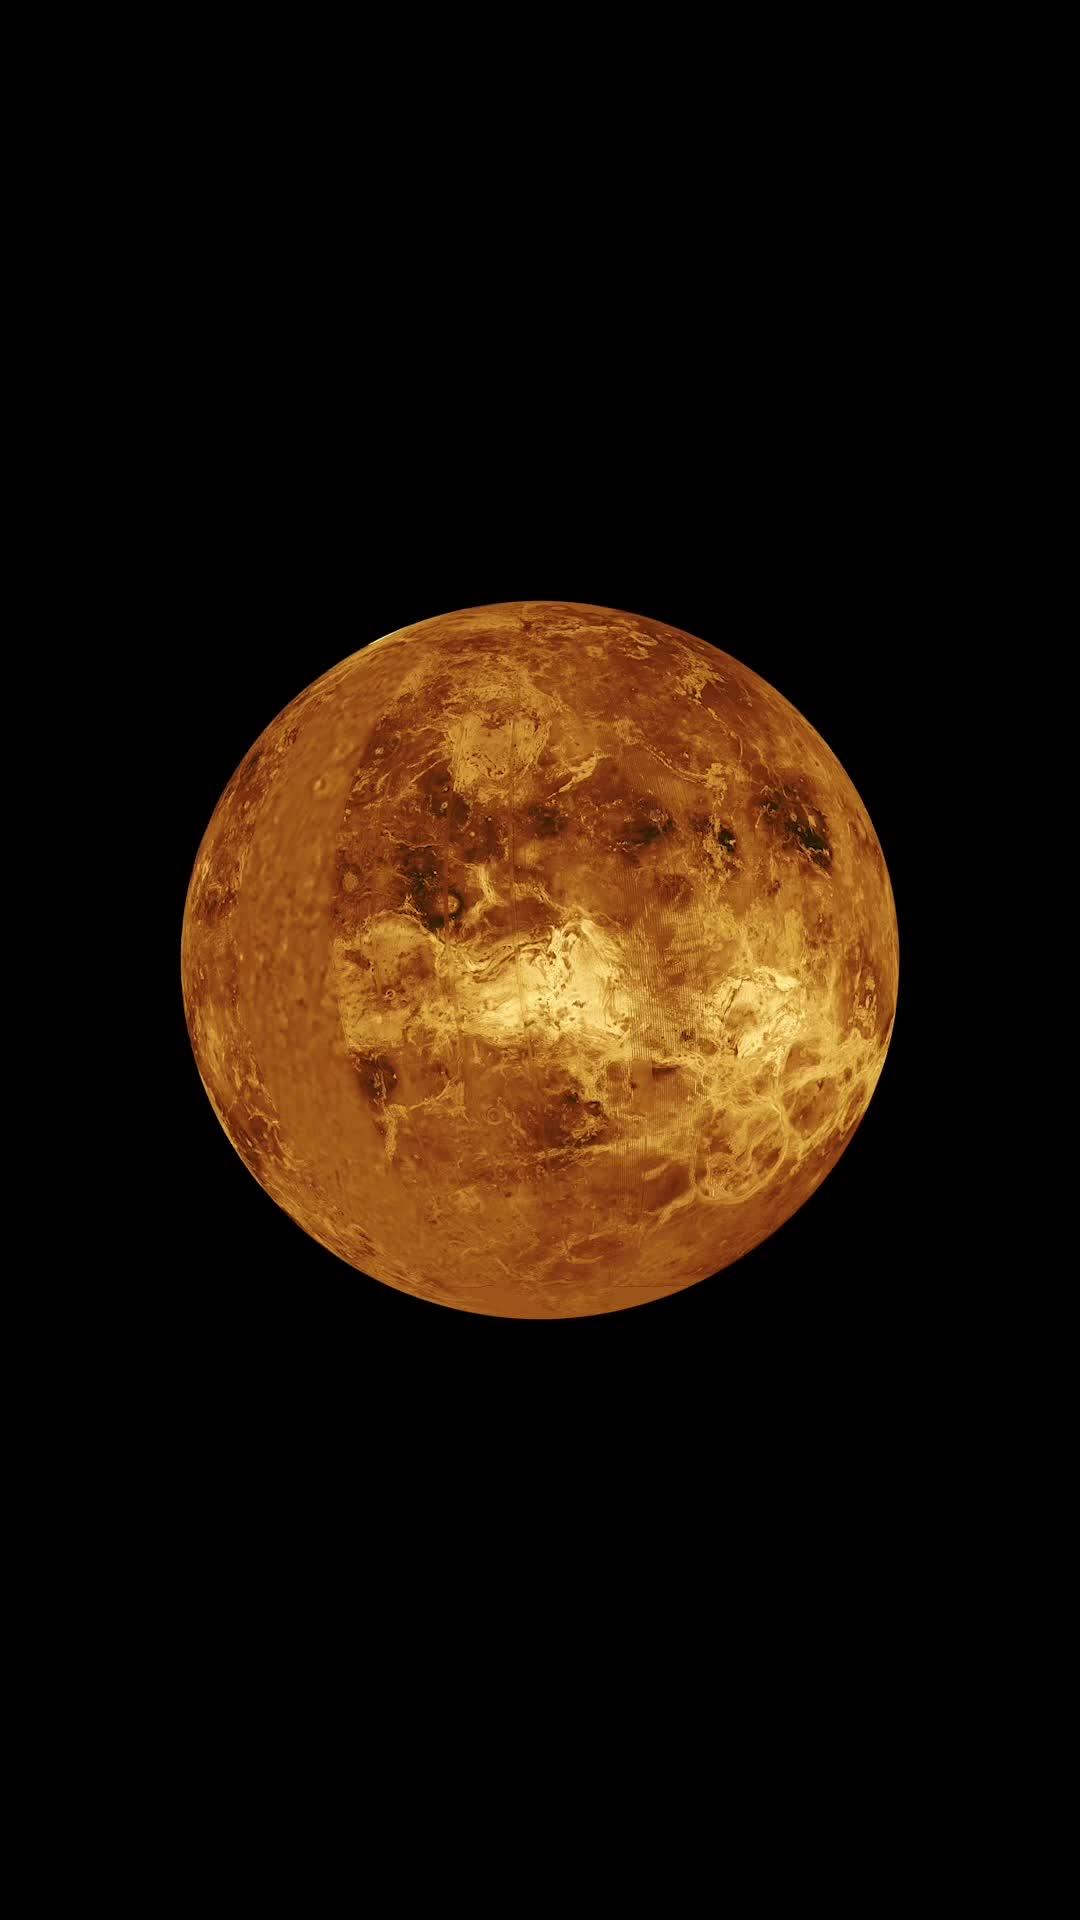 金星有大气层,曾经有过海洋,离地球也更近,可如今为什么选择探测更远